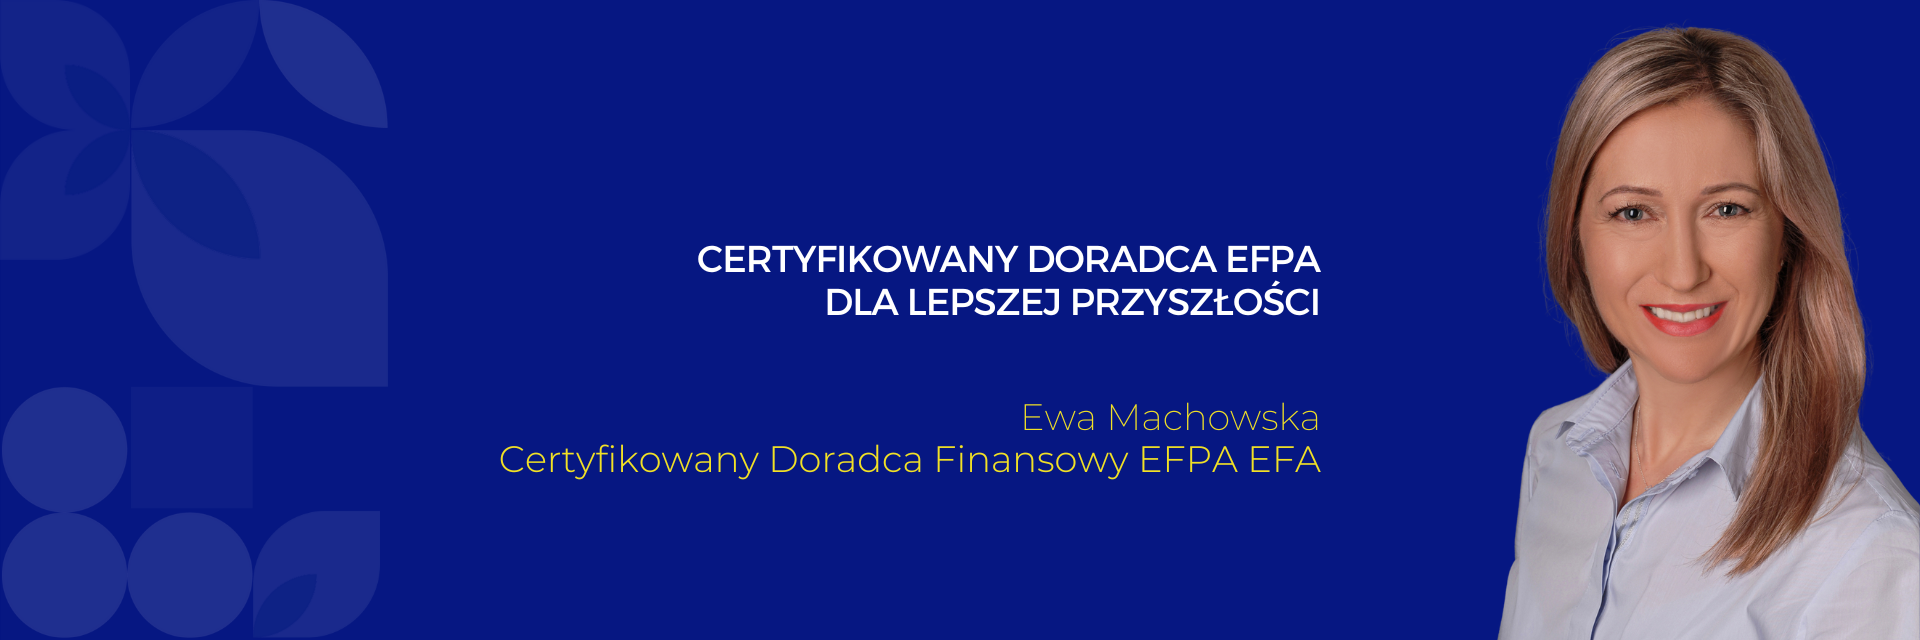 Ewa Machowska